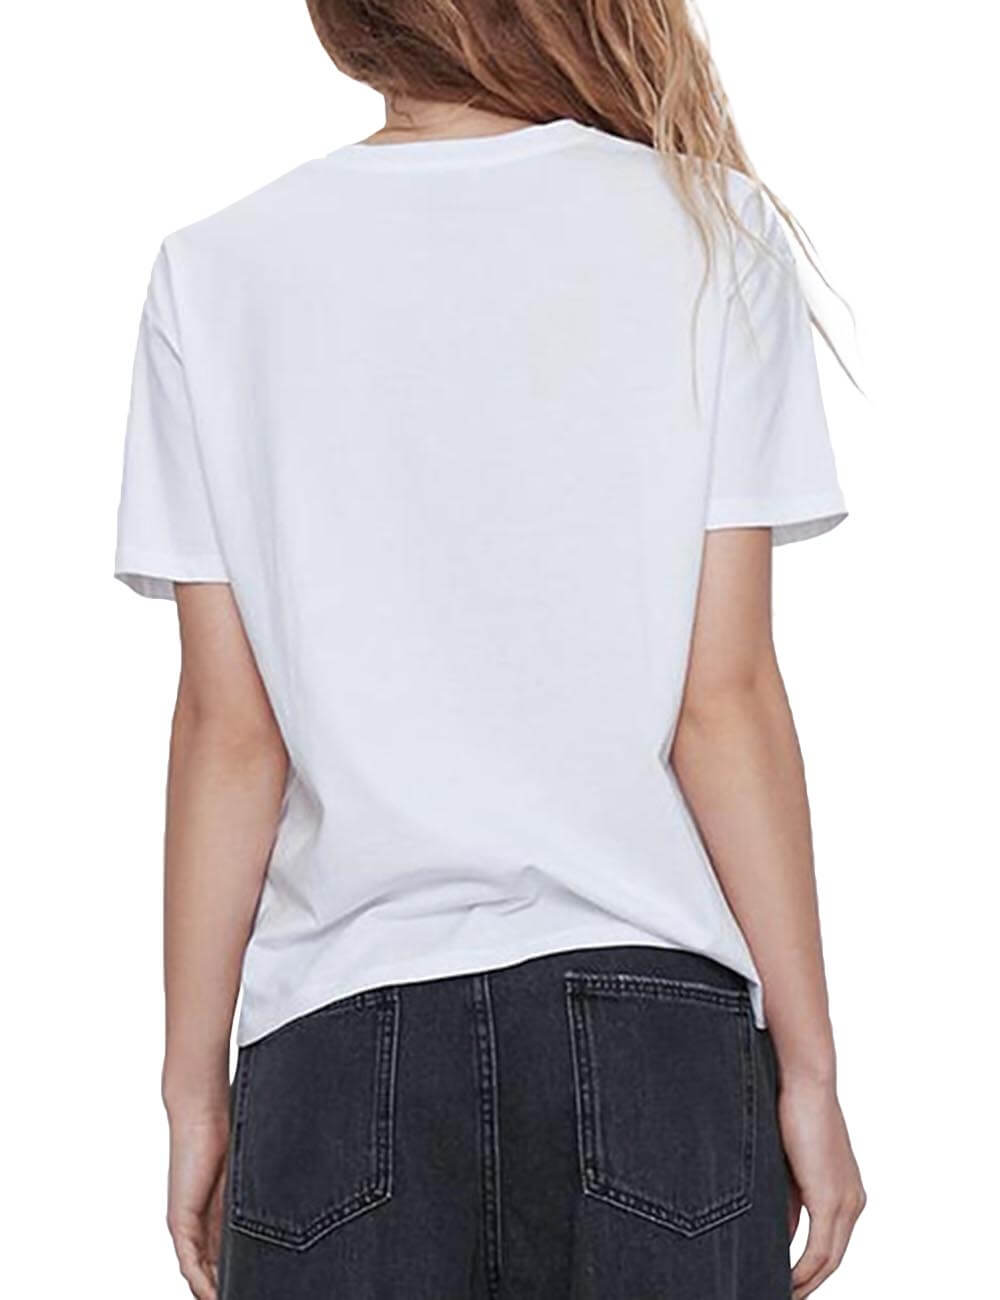  Women‘s Casual Crewneck Giraffe Graphic Printed T Shirt Summer Short Sleeve Shirt Tops